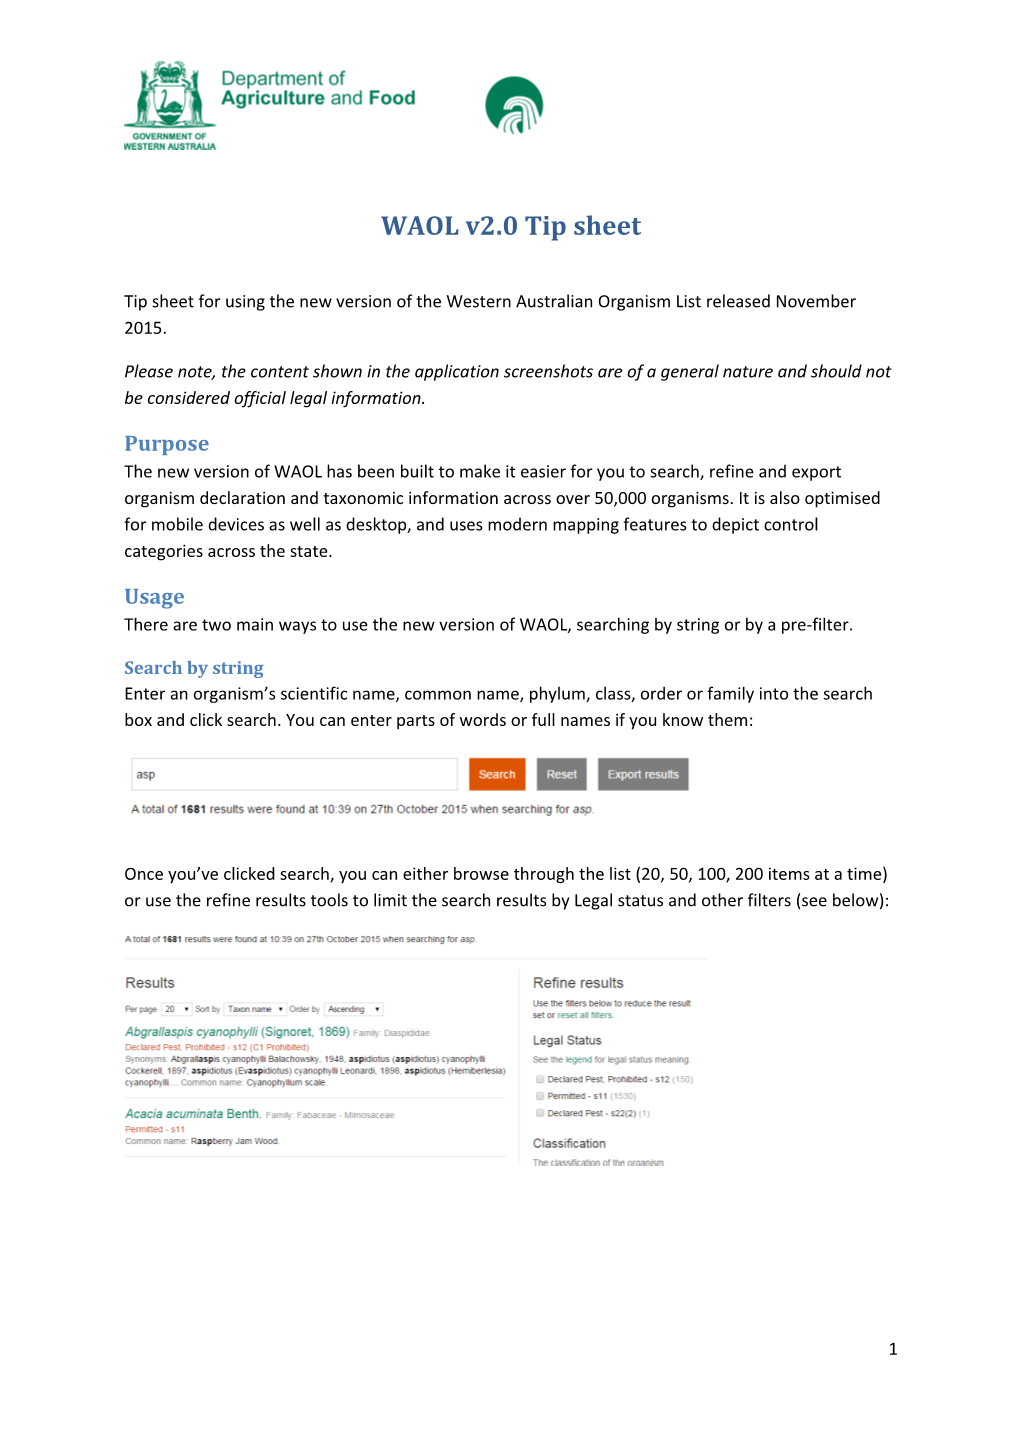 WAOL V2.0 Tip Sheet